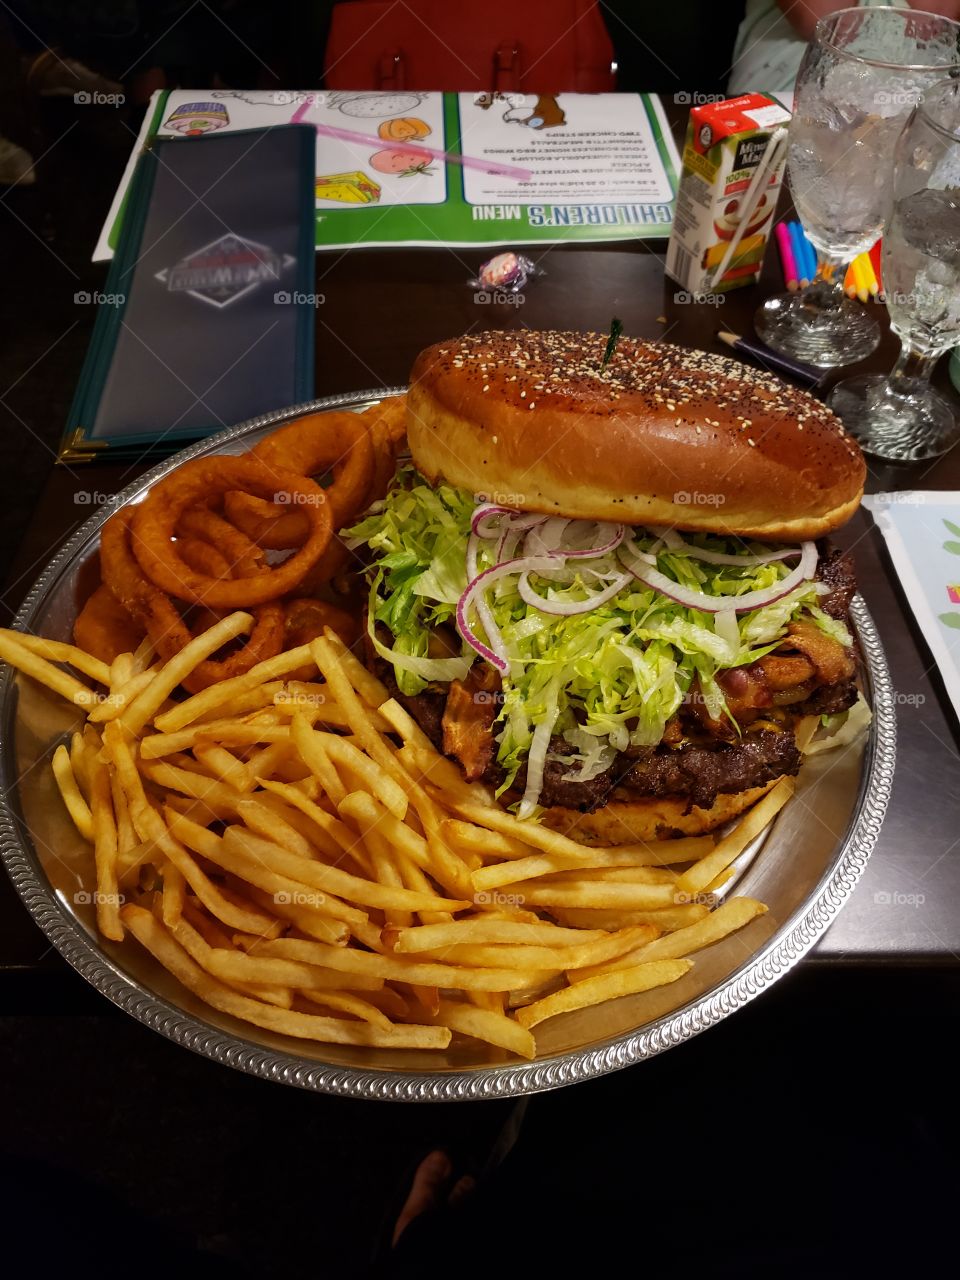 hamburger food challenge